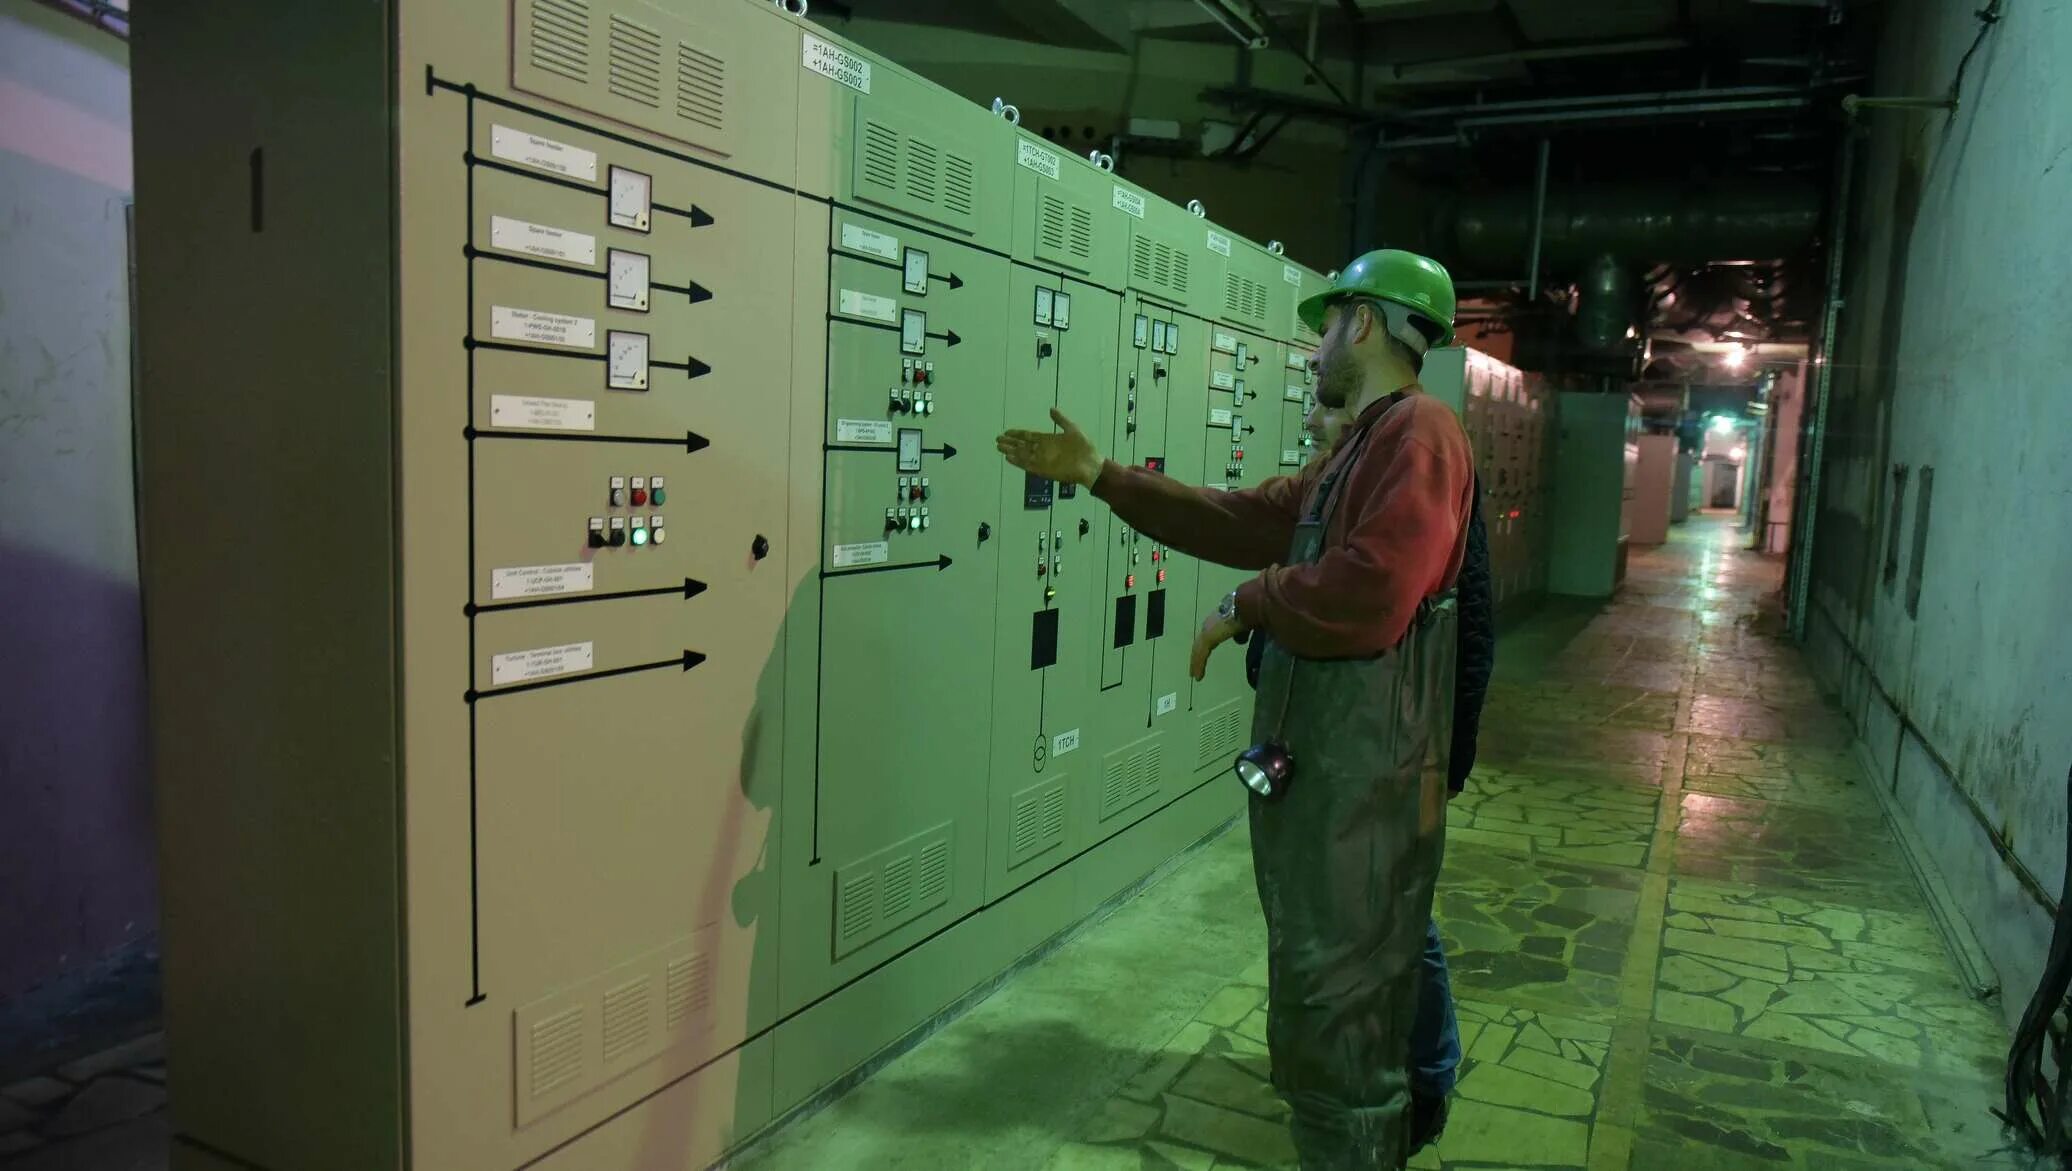 Технологический тоннель Ингур ГЭС Абхазия. Начальник Ингур ГЭС. Перепадной ГЭС 3 Ингур. Откуда в Абхазии электроэнергия.